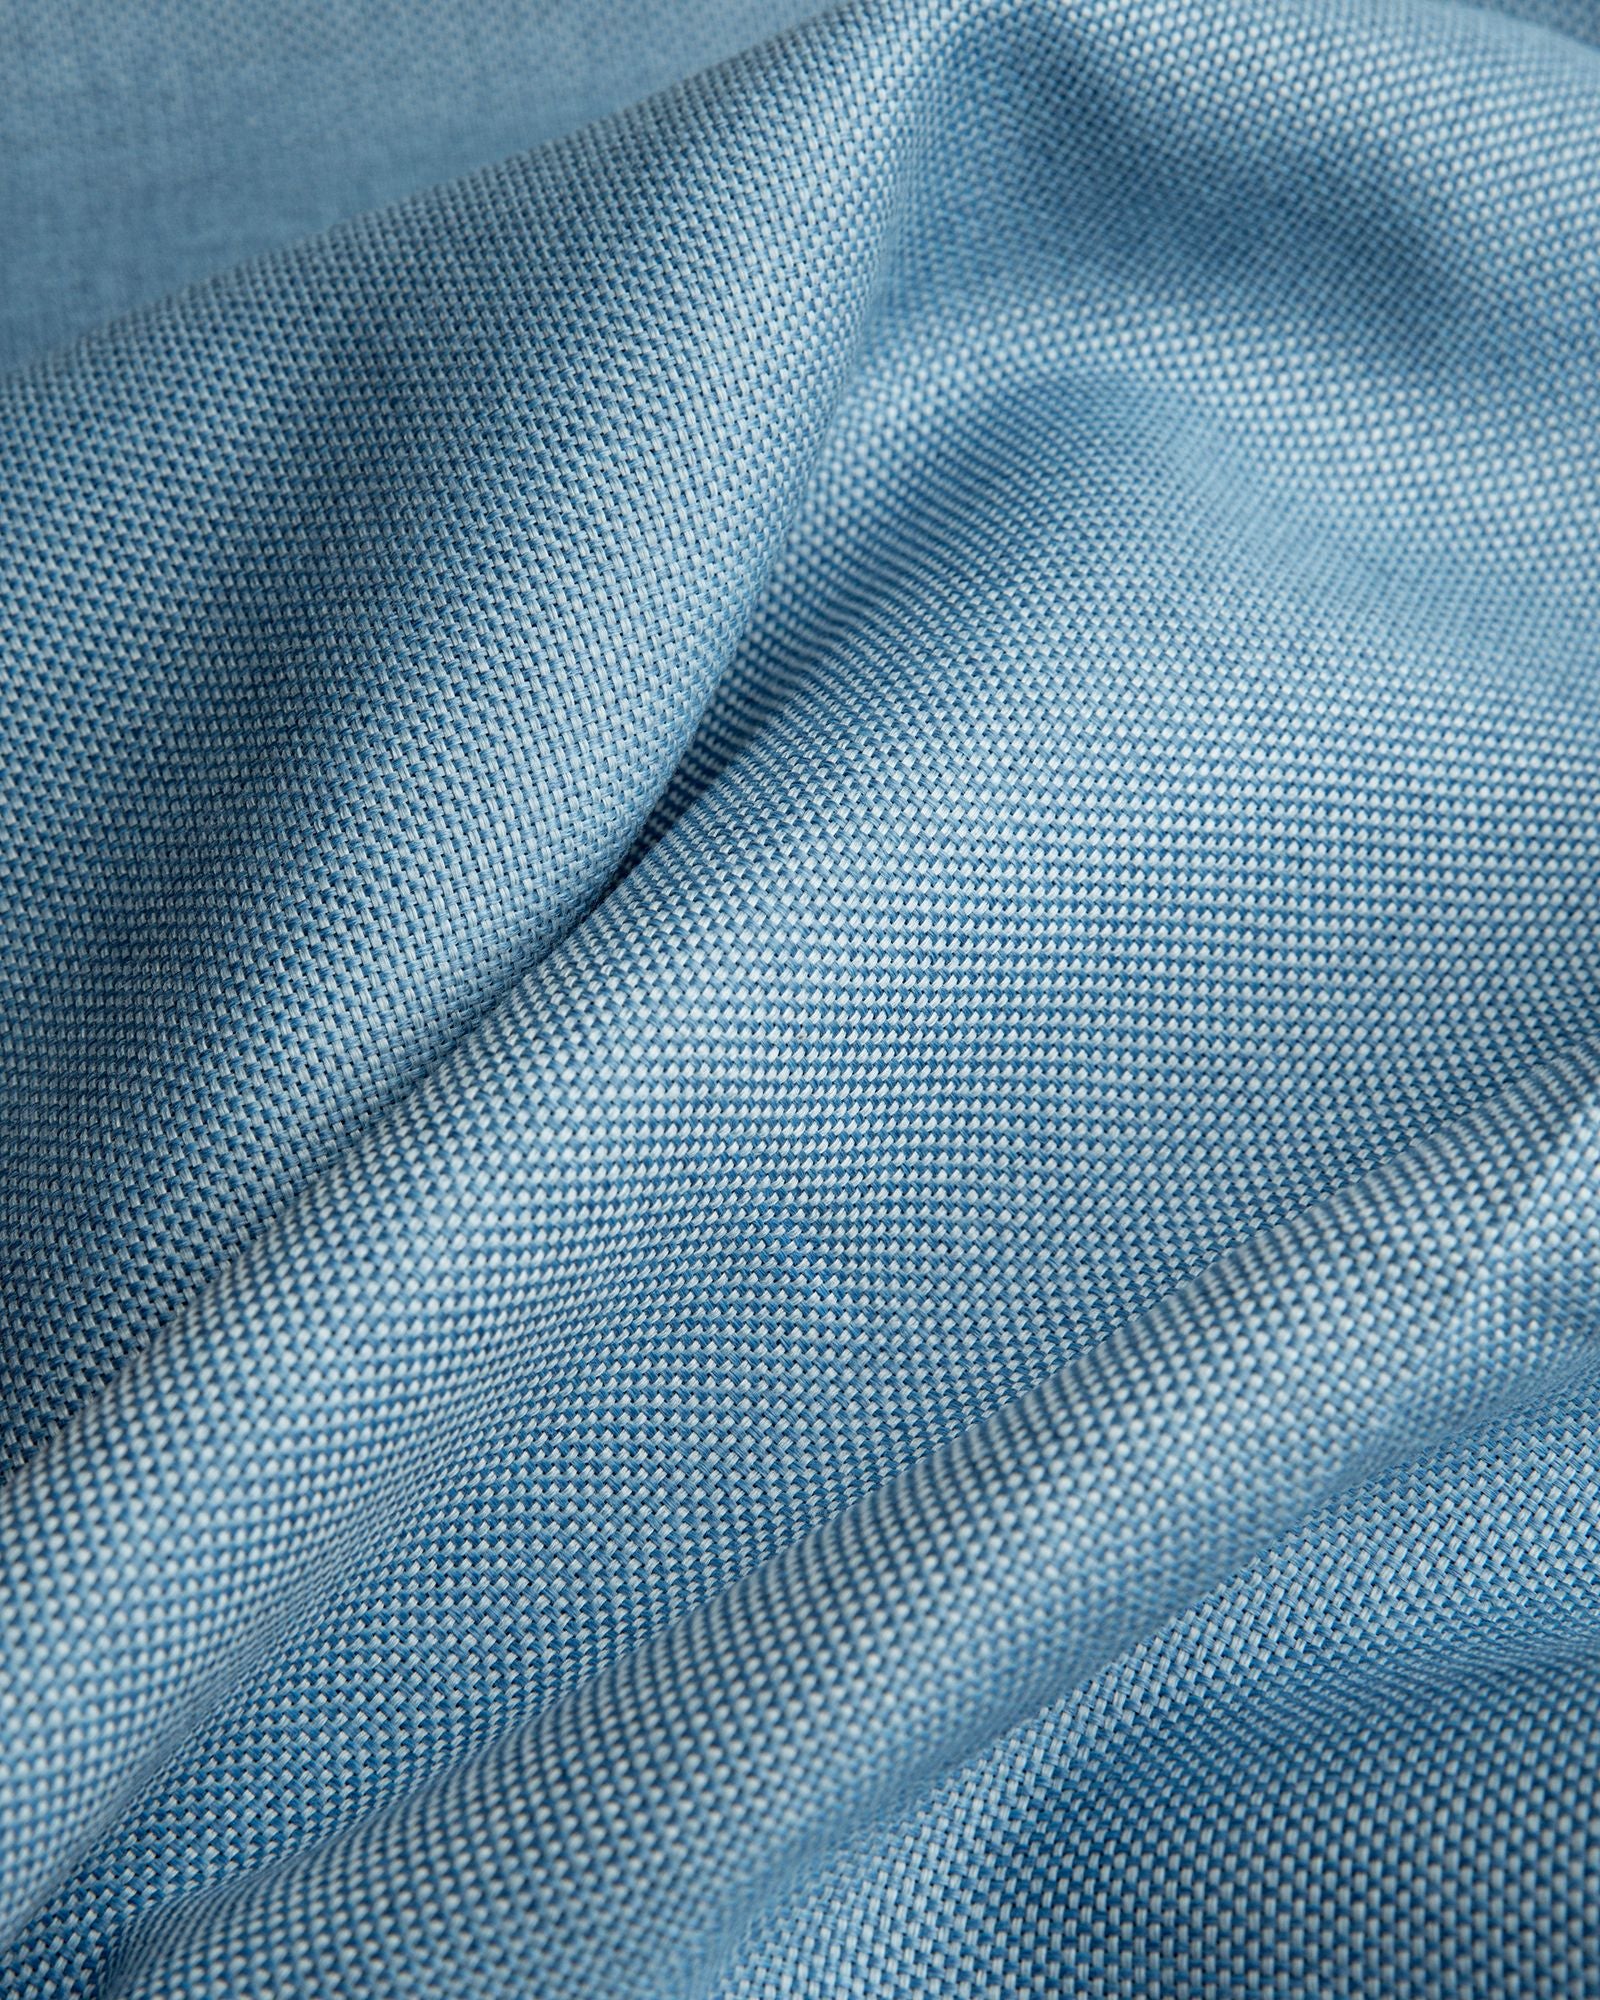 Größe: Ø170 cm Farbe: hellblau #farbe_hellblau